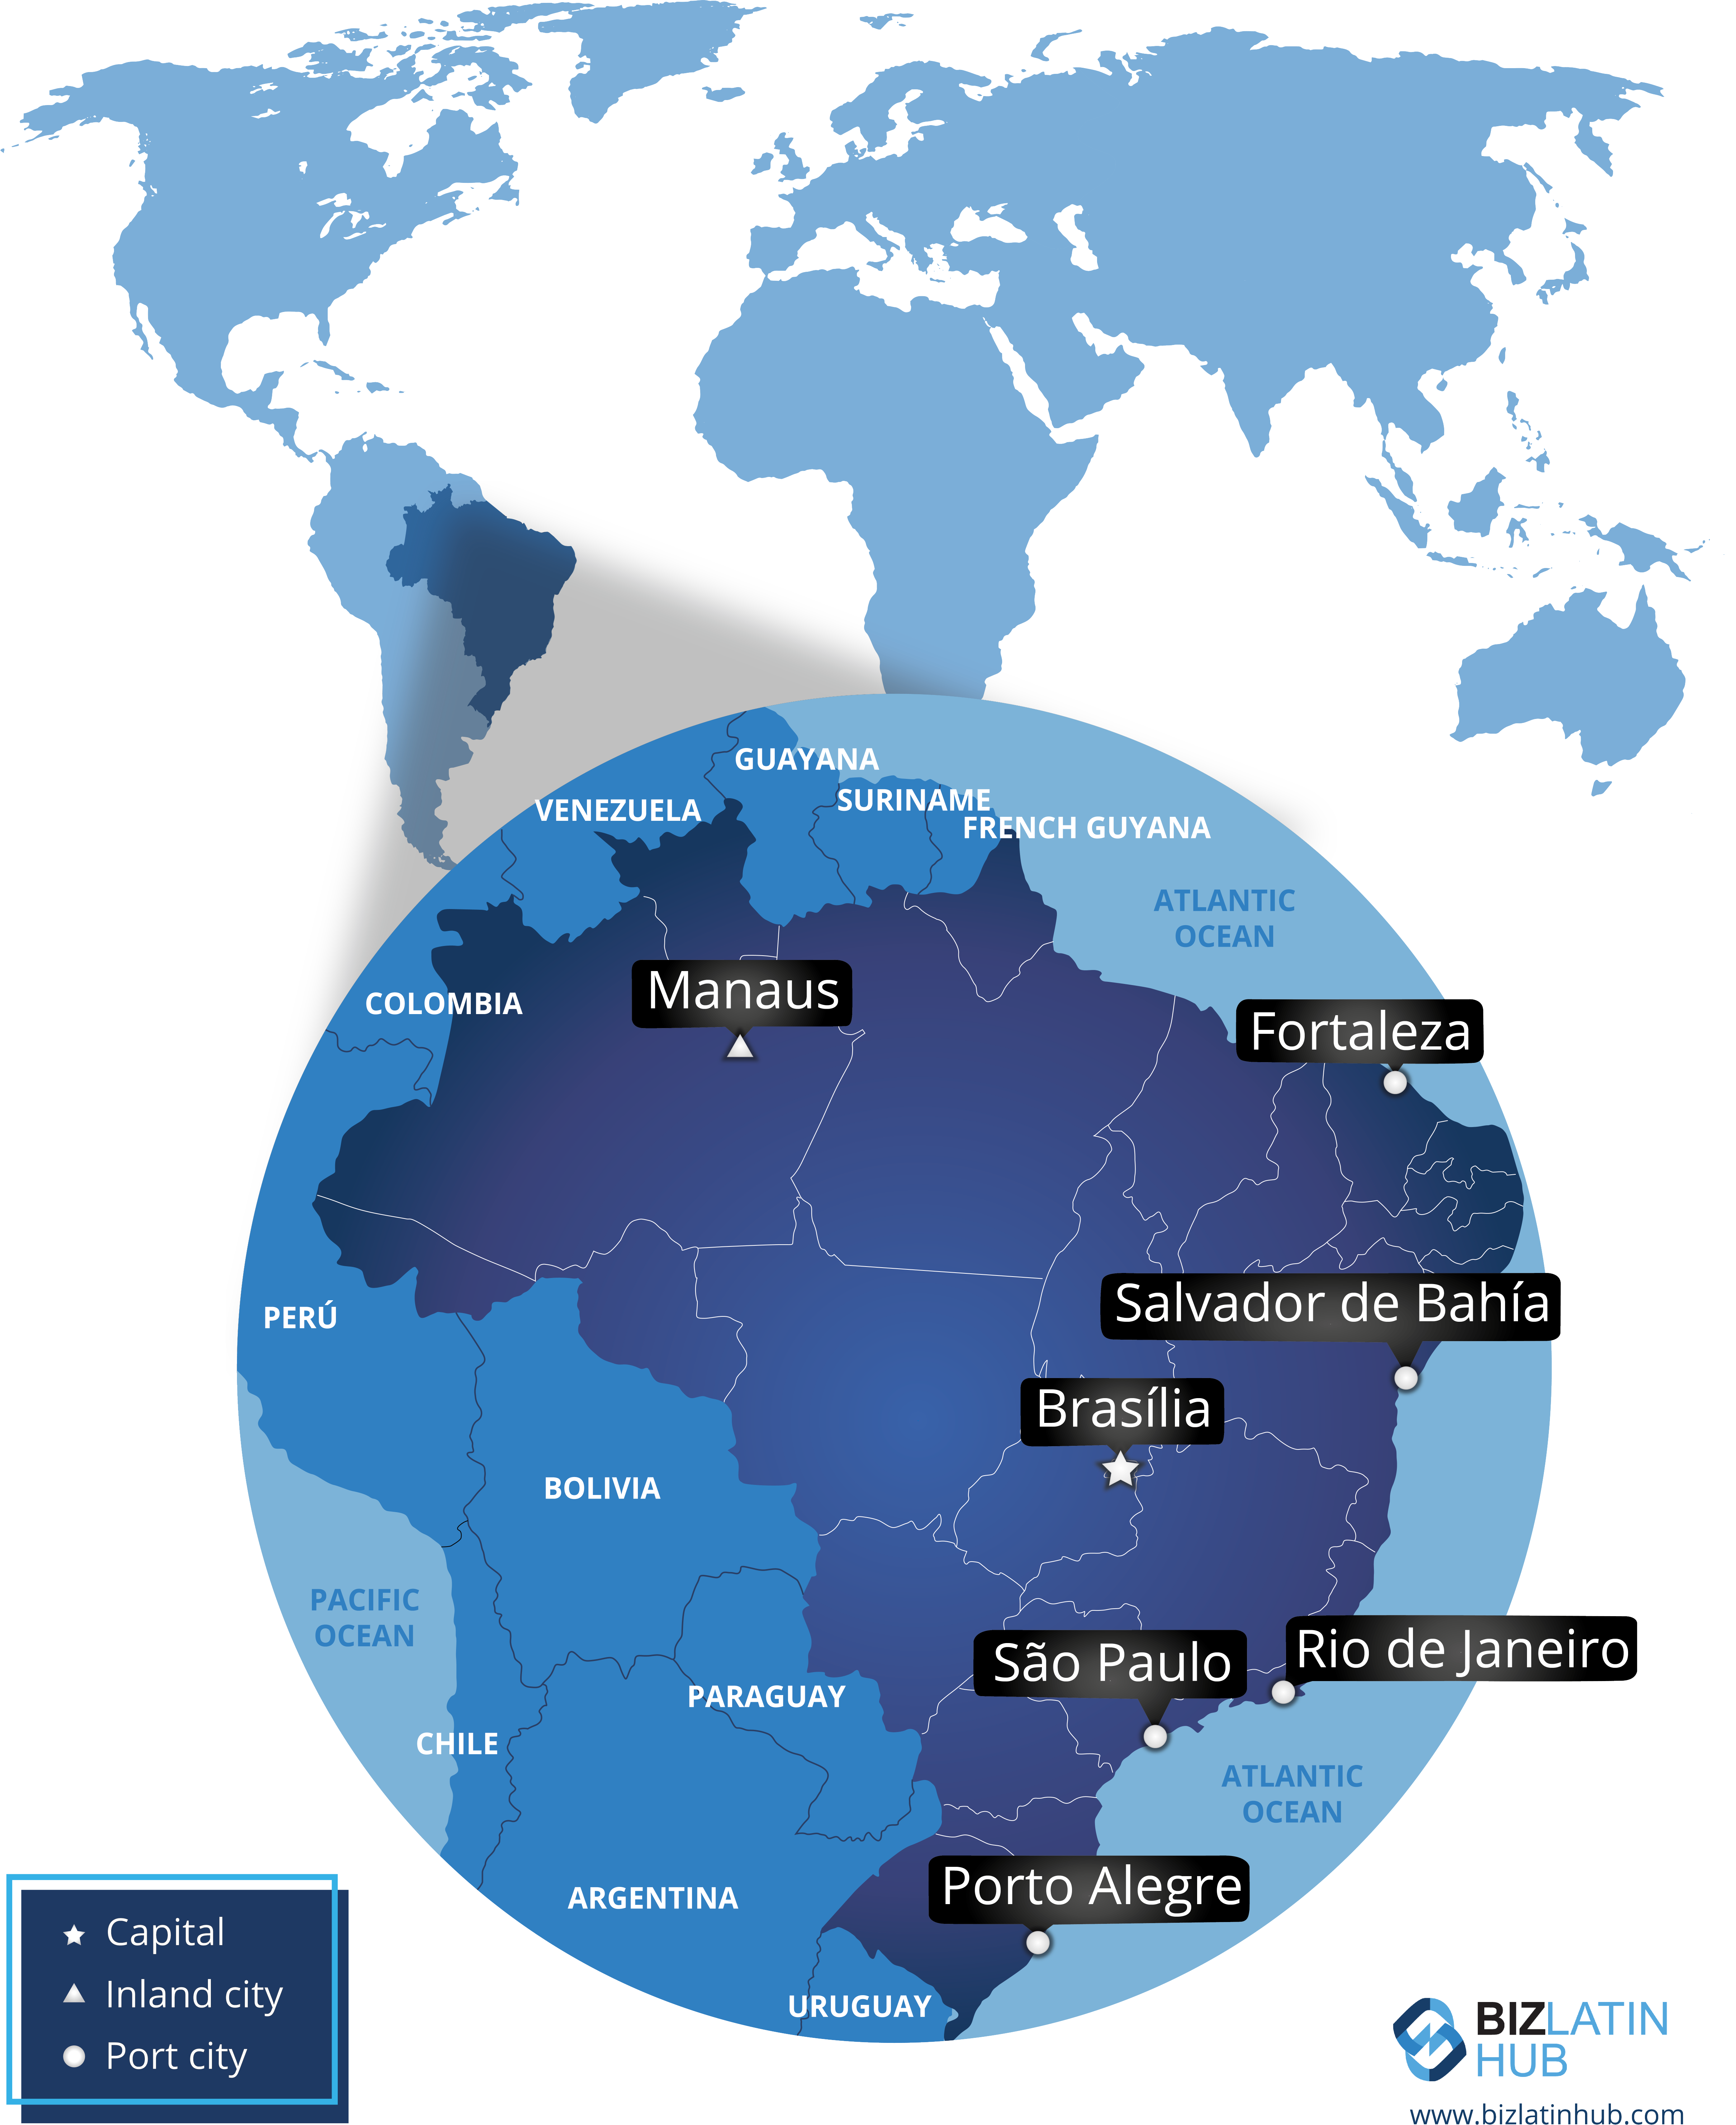 Mapa que localiza o Brasil no mundo e representa suas principais cidades 